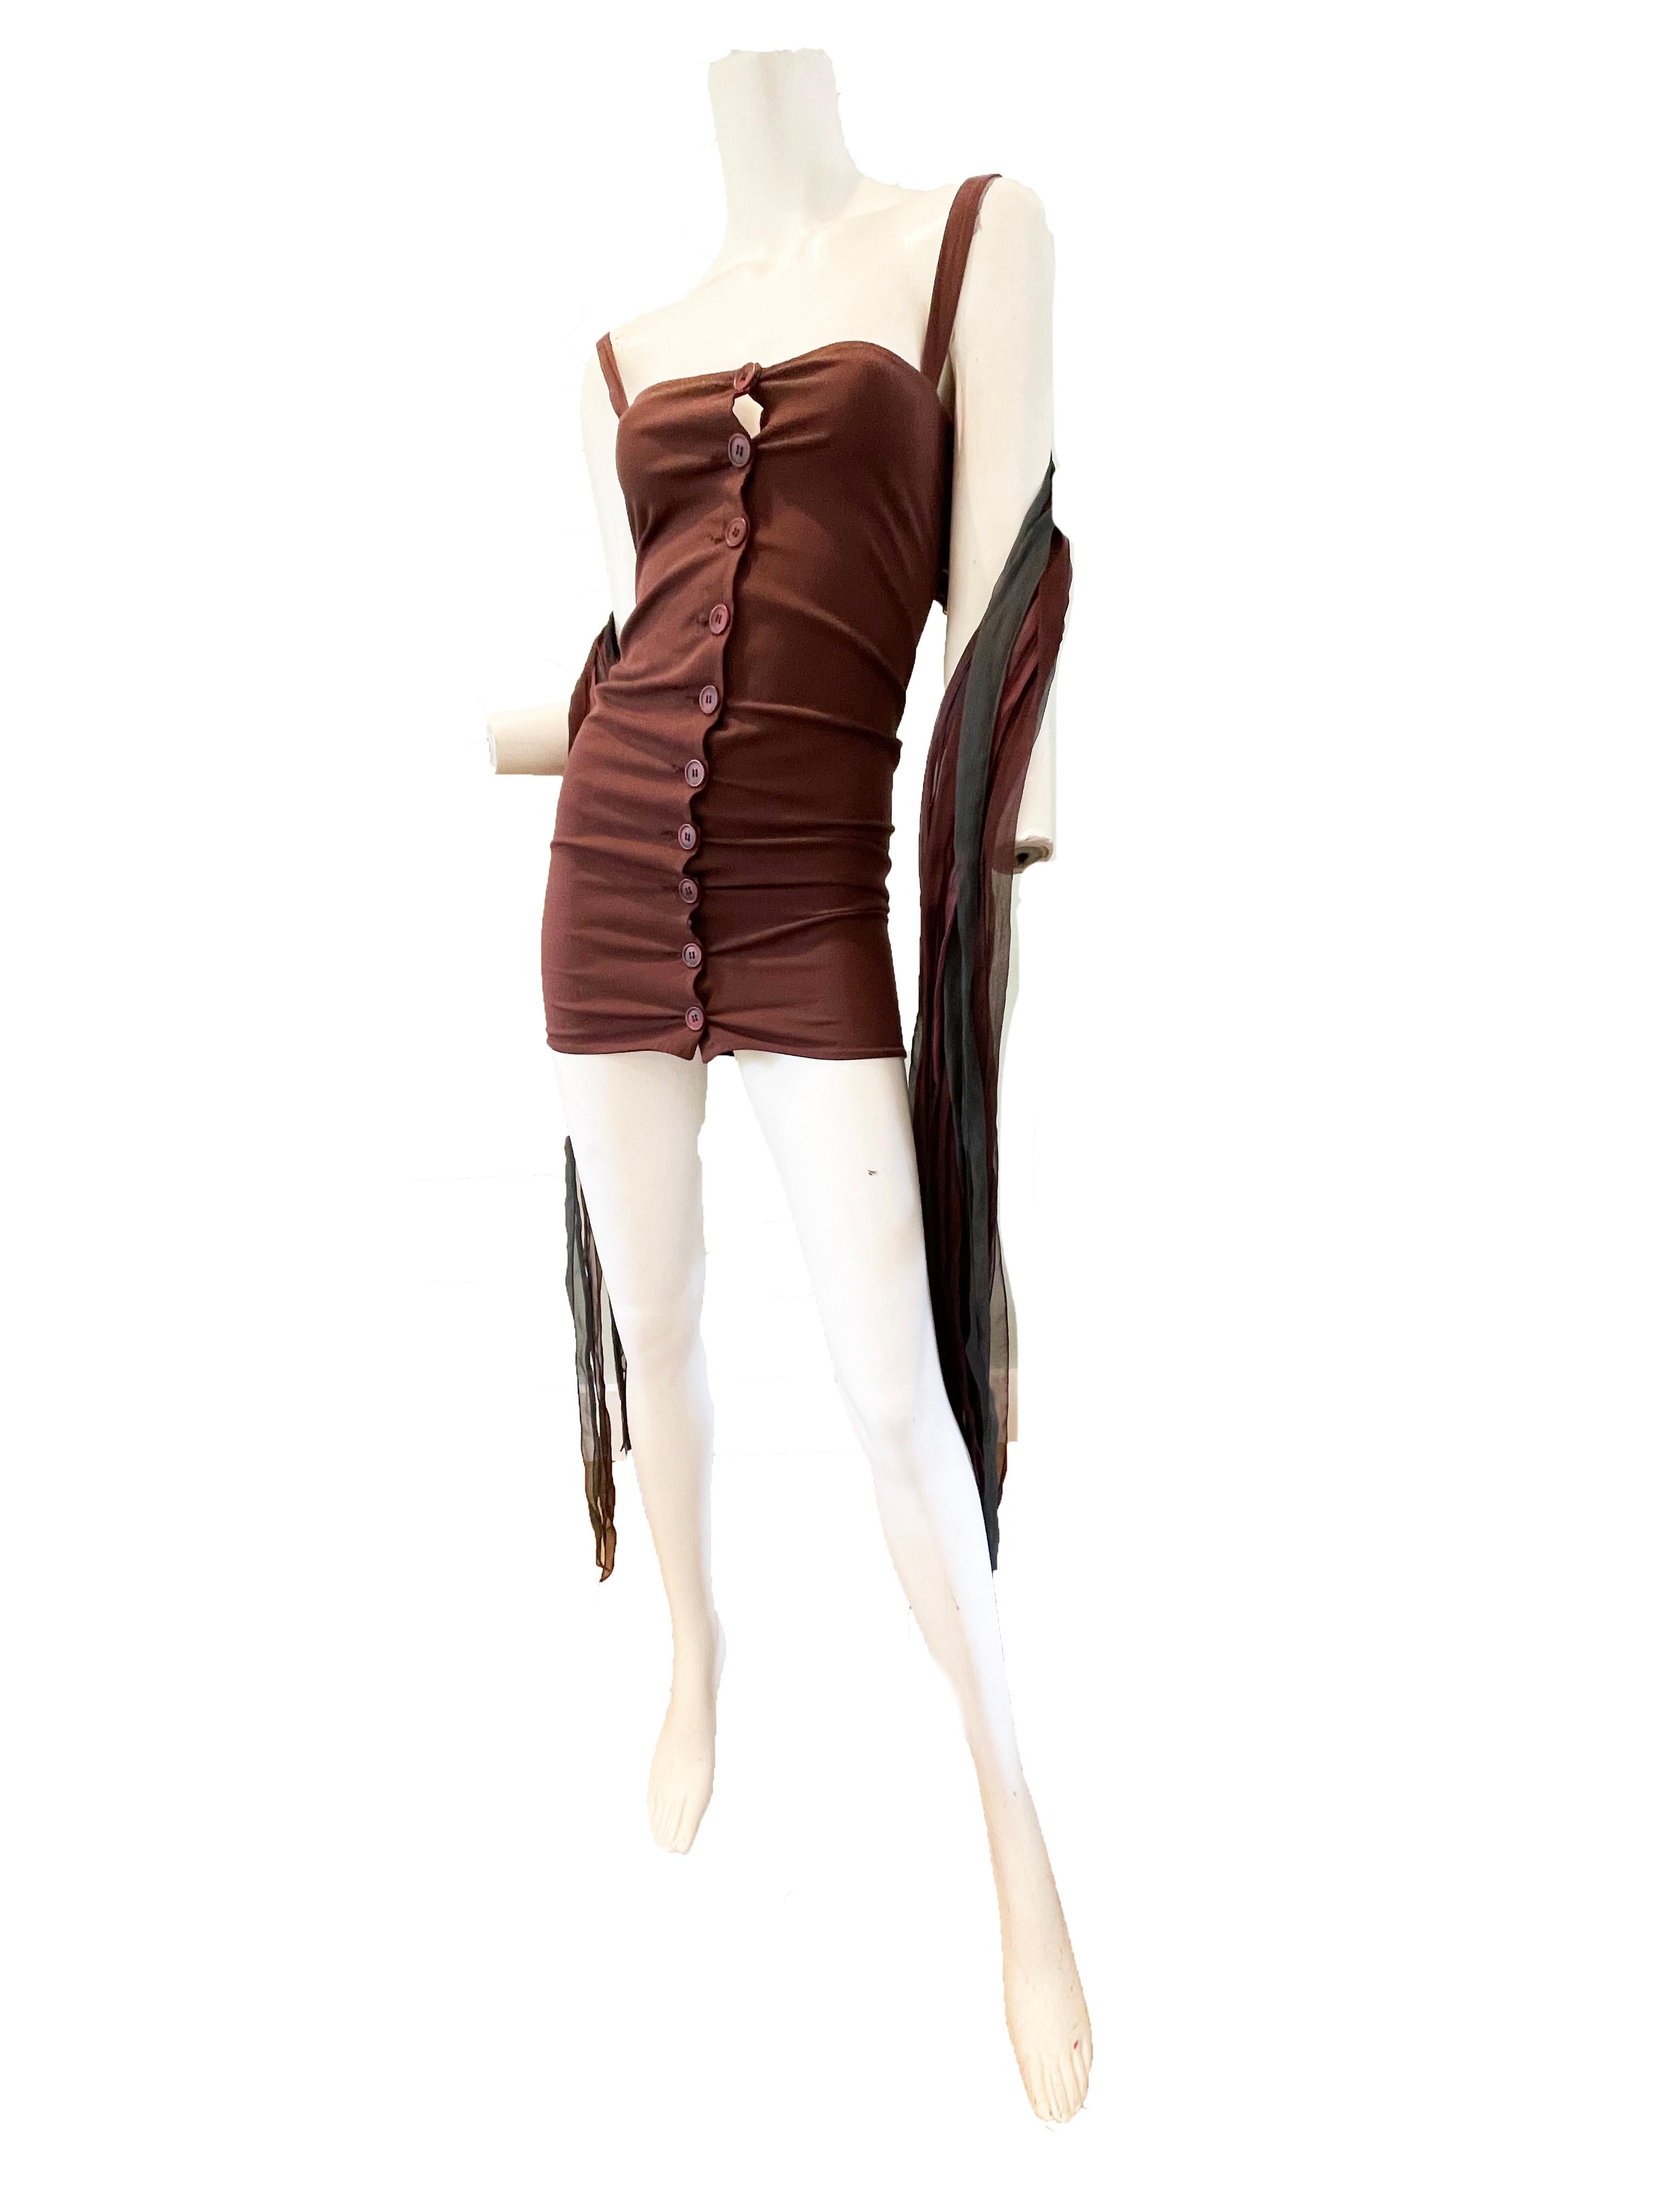 1991 Dolce & Gabbana Mini-Stretch-Kleid mit langen Seidensträngen auf dem Rücken.

Knöpfe auf der Vorderseite

Zustand: Ausgezeichnet

Größe XS/ Klein 

